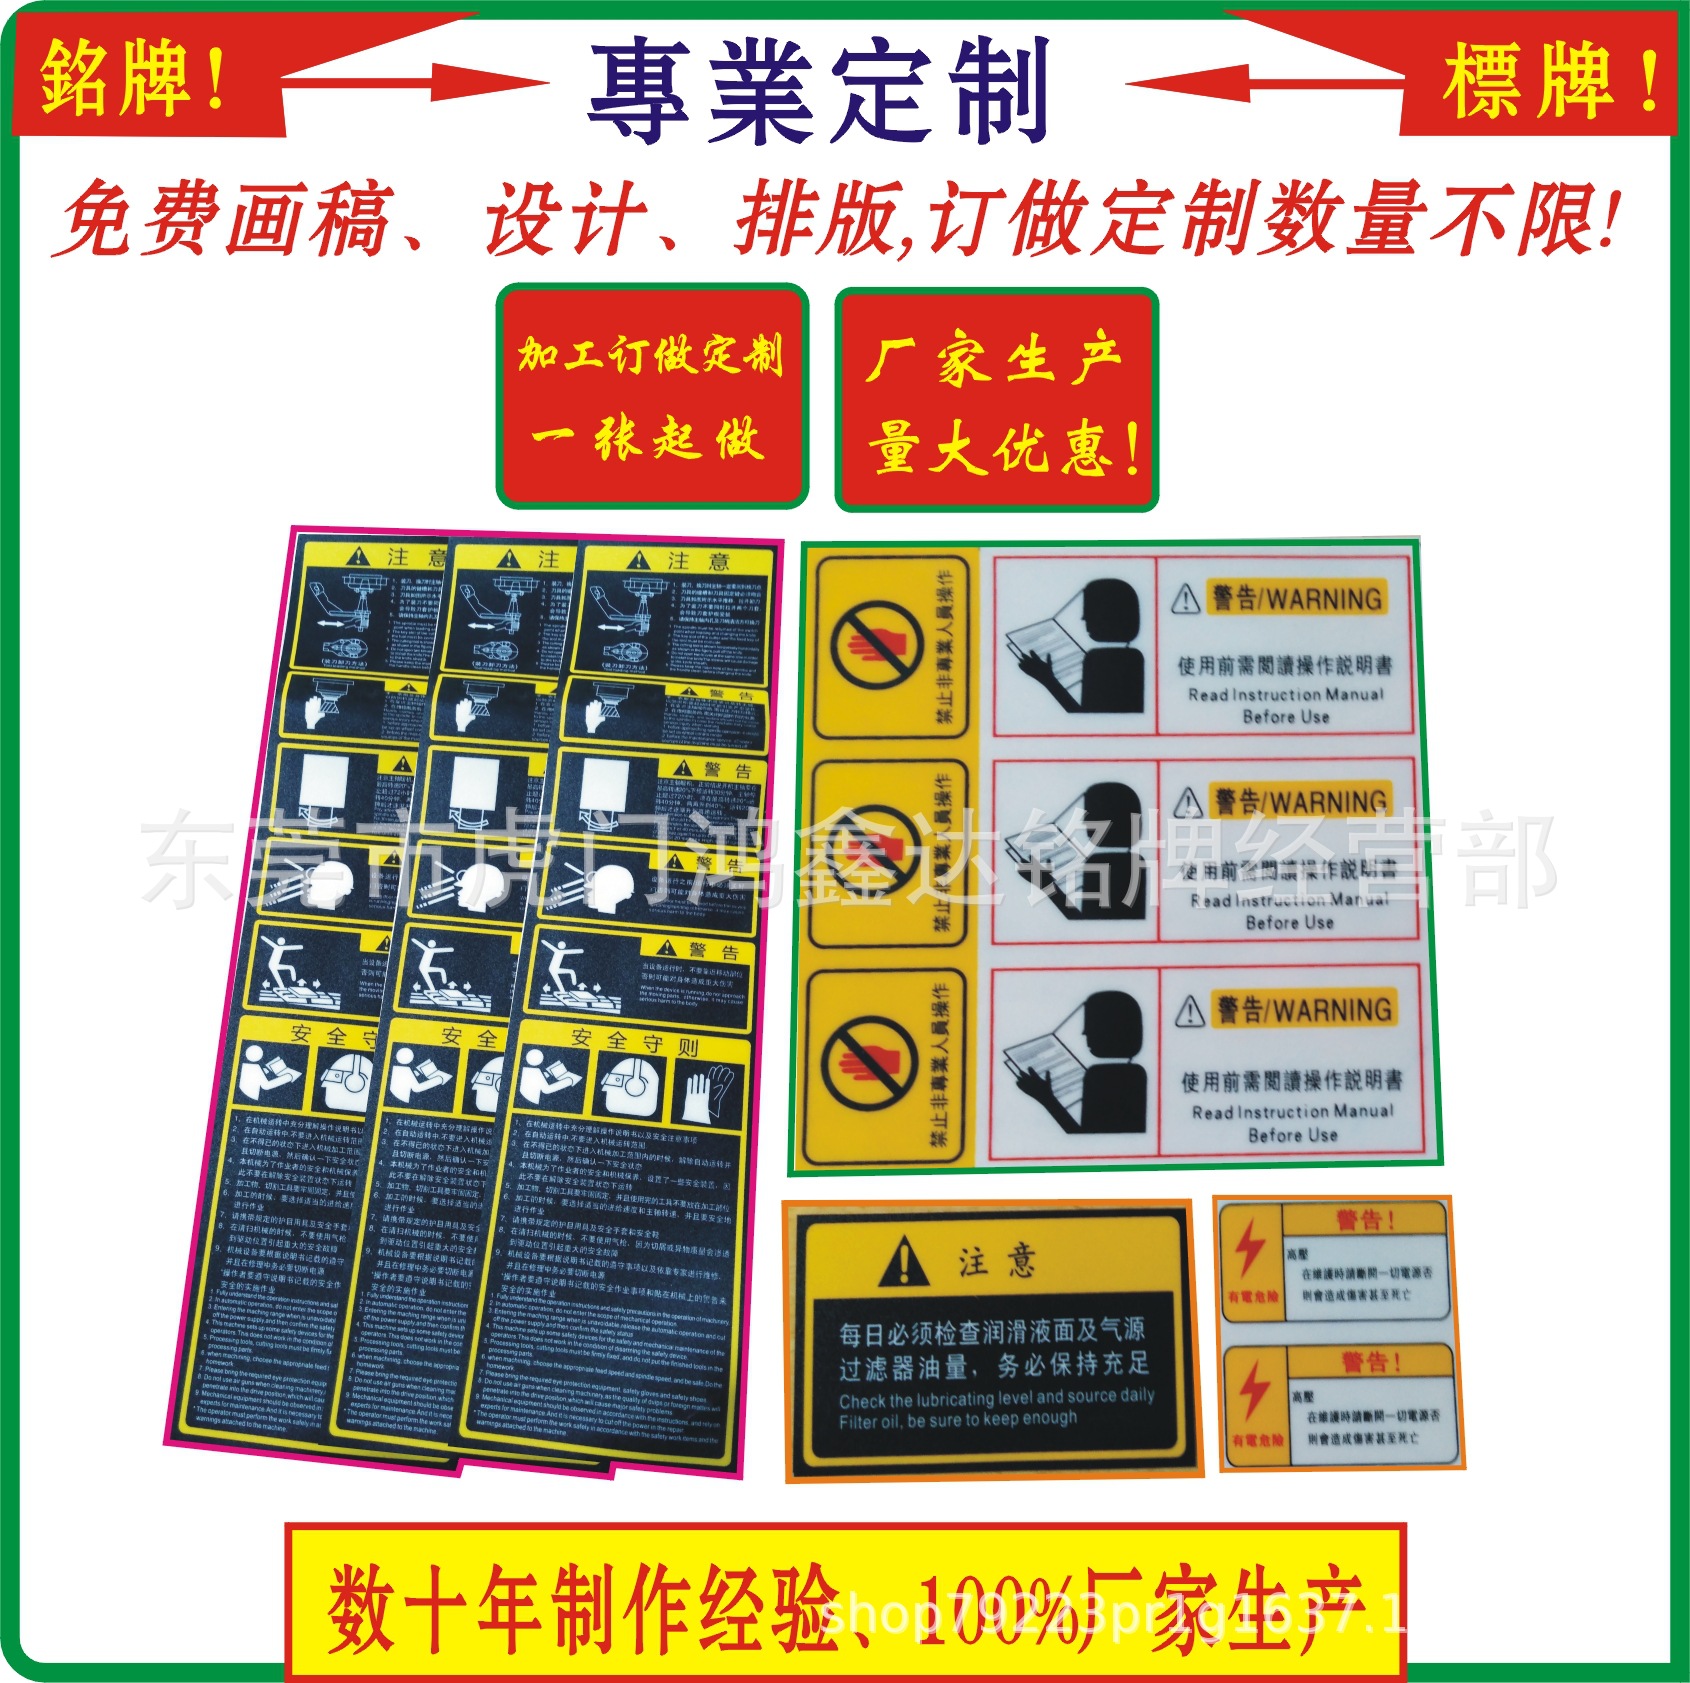 机床贴纸、pvc丝印标签、电器出厂标贴、设备出厂标贴，警示标签|ru